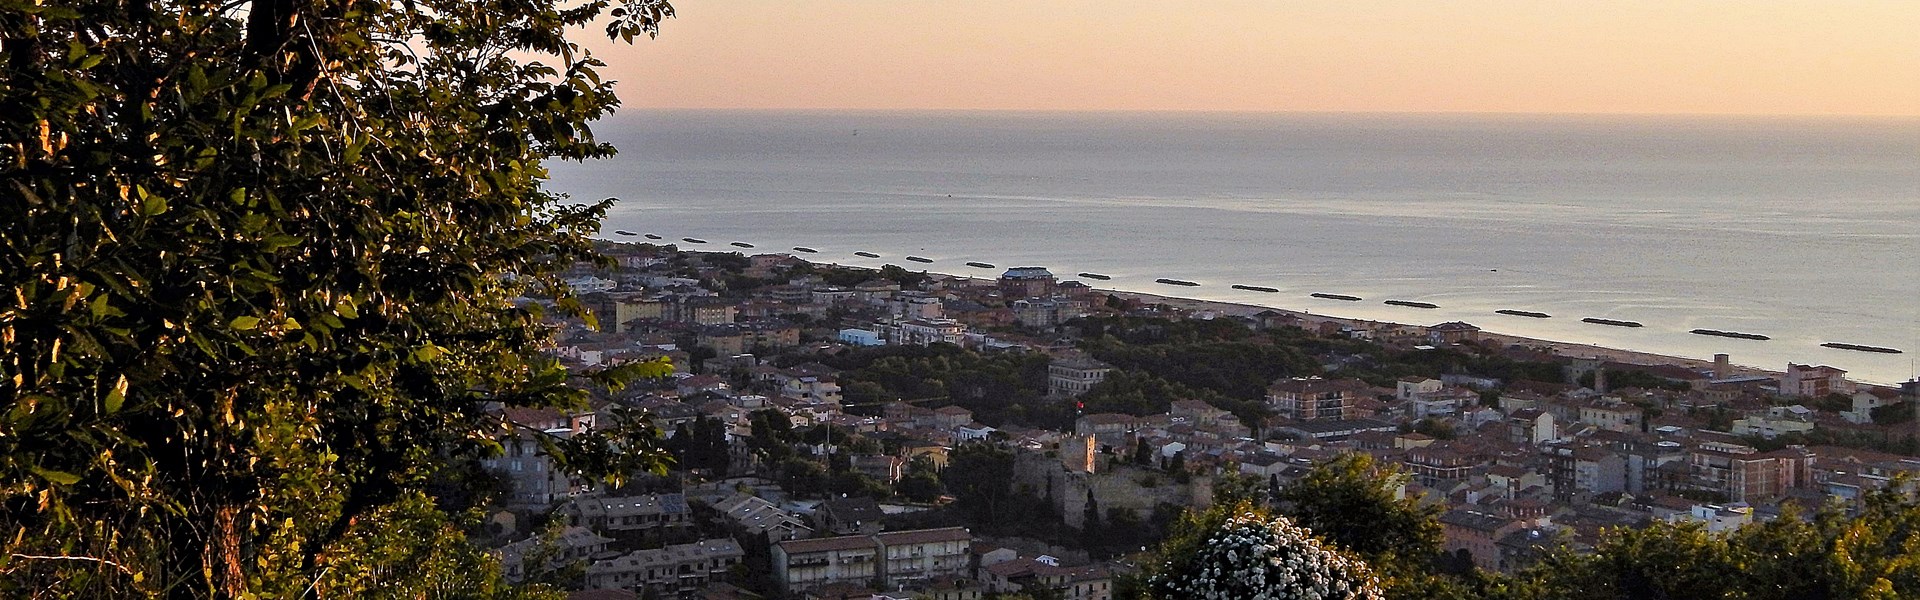 Porto San Giorgio - Spiaggia all'alba